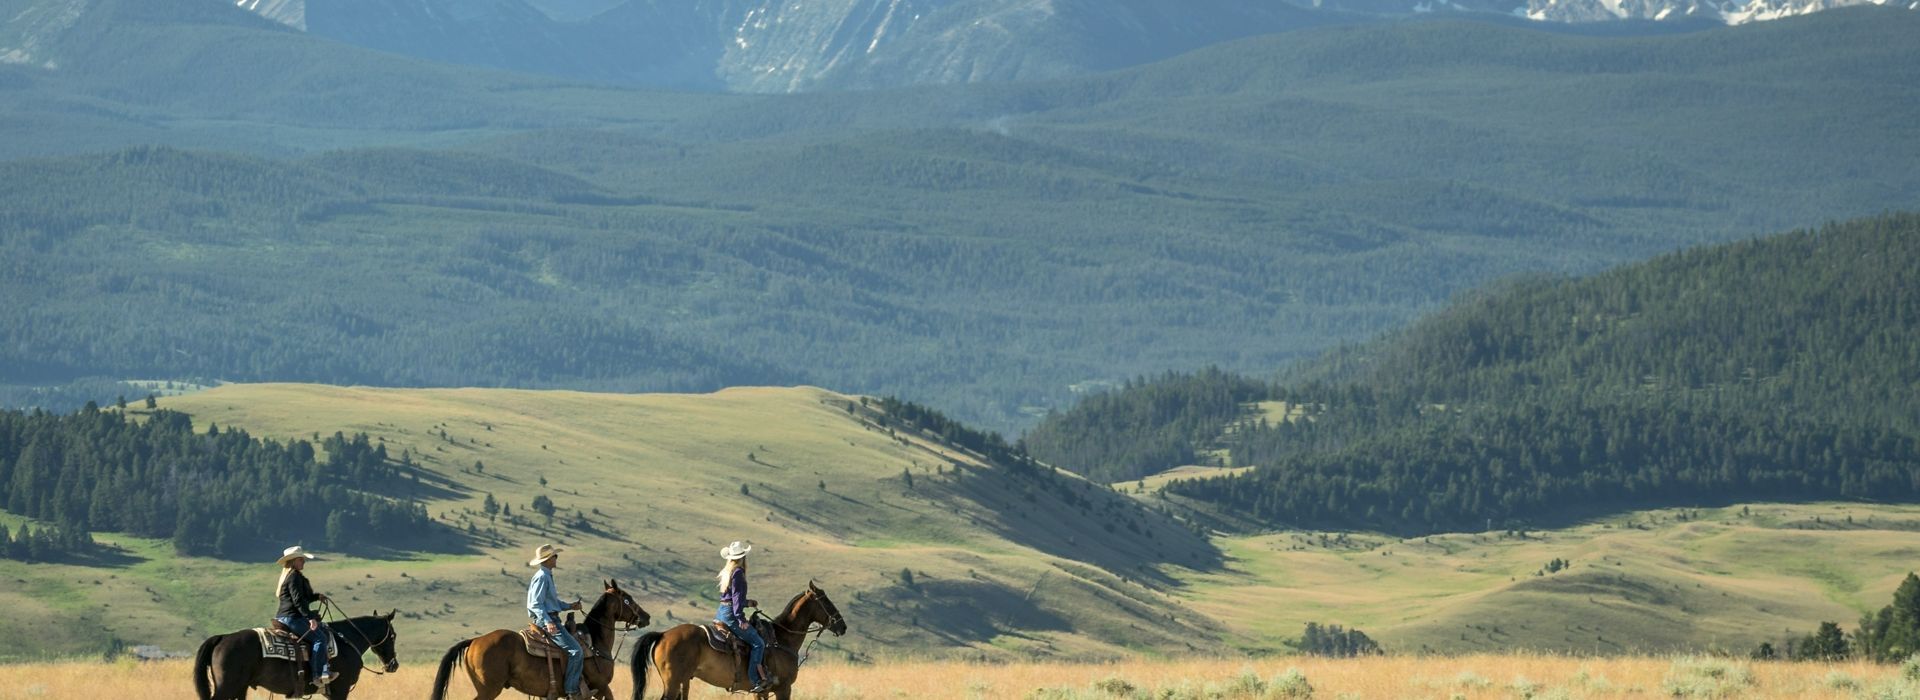 ranch-rock-creek-signature-images-Fall-Horseback-Riding.JPG